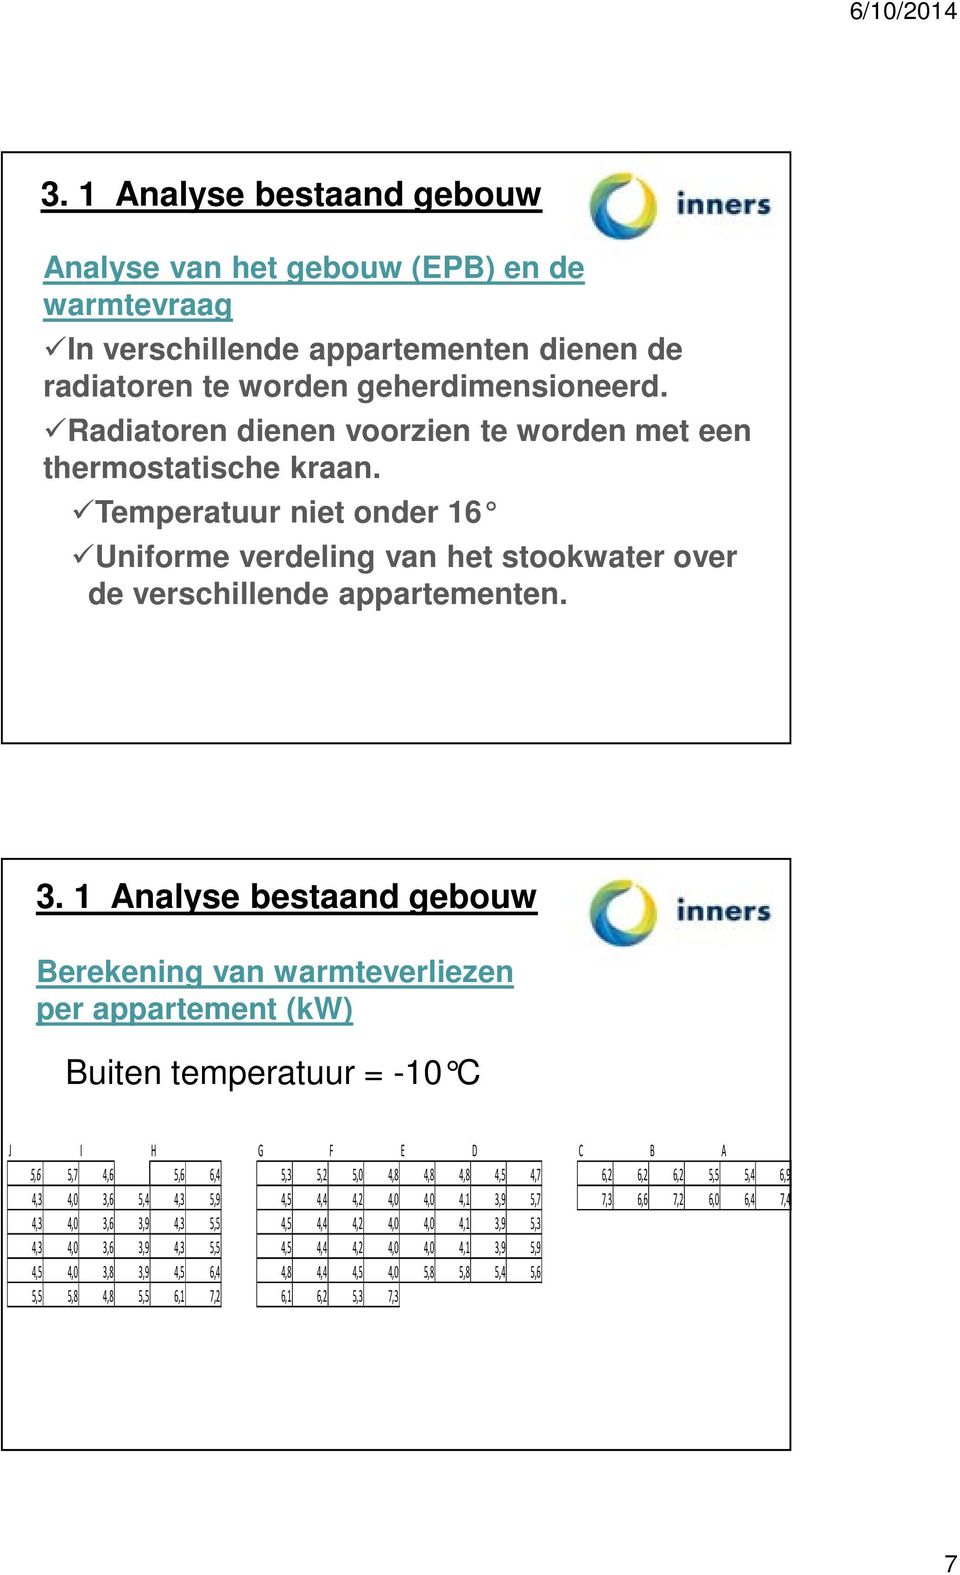 1 Analyse bestaand gebouw Berekening van warmteverliezen per appartement (kw) Buiten temperatuur = -10 C J I H G F E D C B A 5,6 5,7 4,6 5,6 6,4 5,3 5,2 5,0 4,8 4,8 4,8 4,5 4,7 6,2 6,2 6,2 5,5 5,4